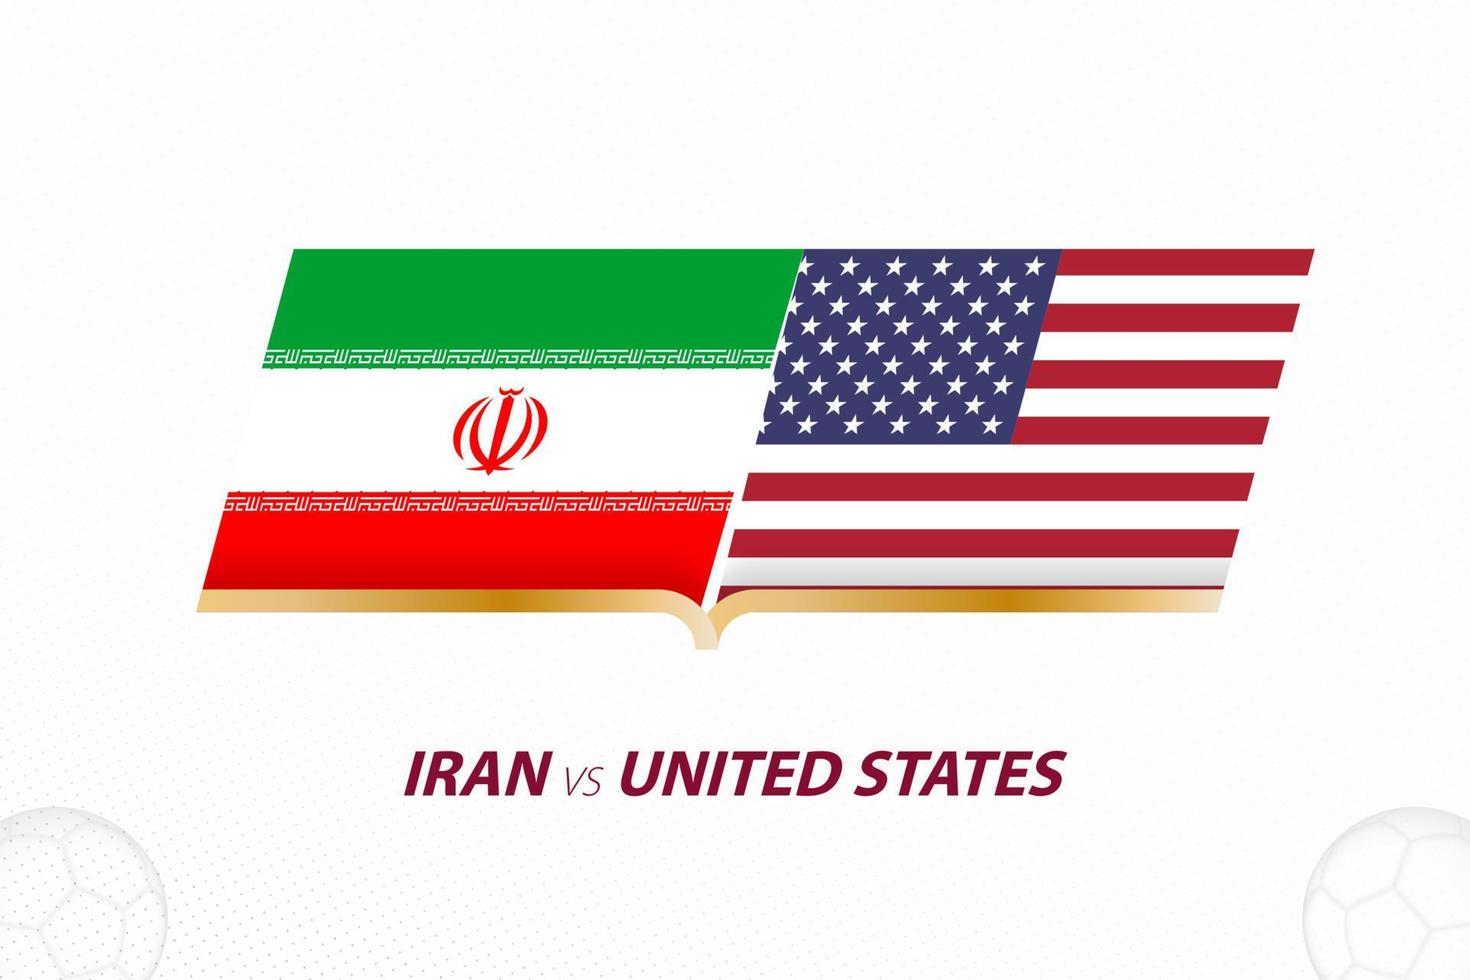 iran gegen die vereinigten staaten im fußballwettbewerb, gruppe a. gegen Symbol auf Fußballhintergrund. vektor